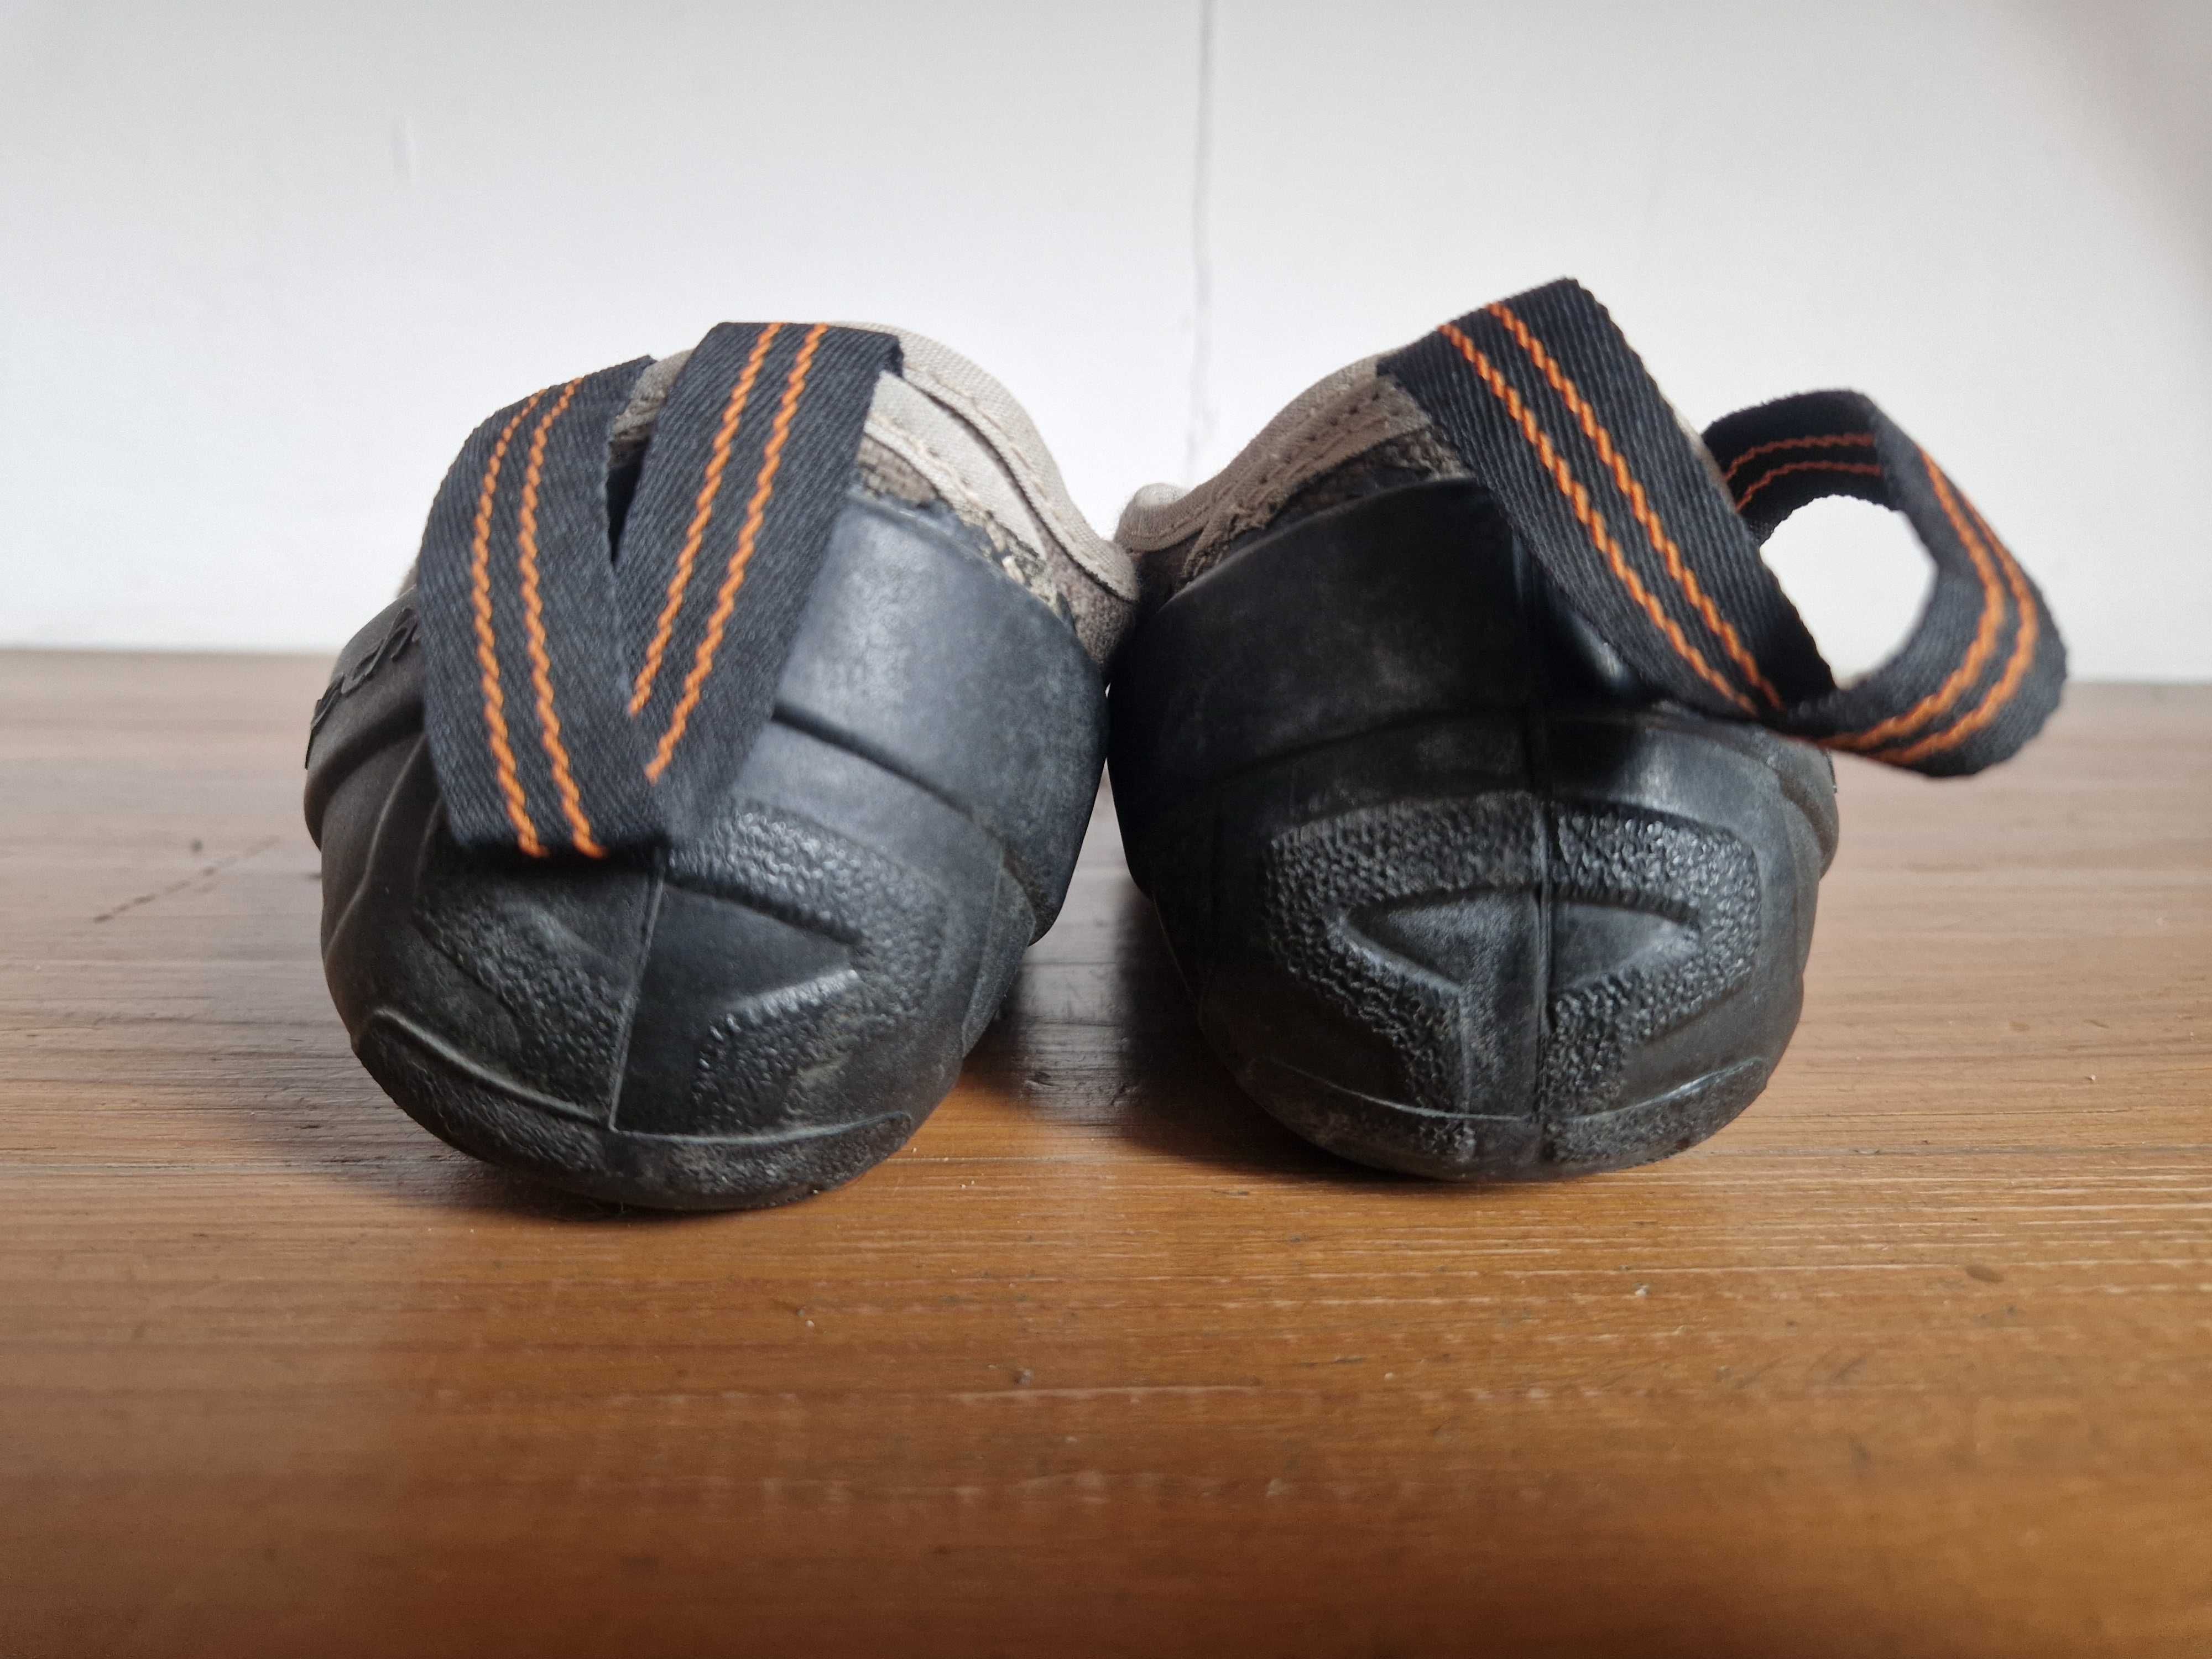 Buty wspinaczkowe Quechua twarde na rozmiar 35 - 22cm